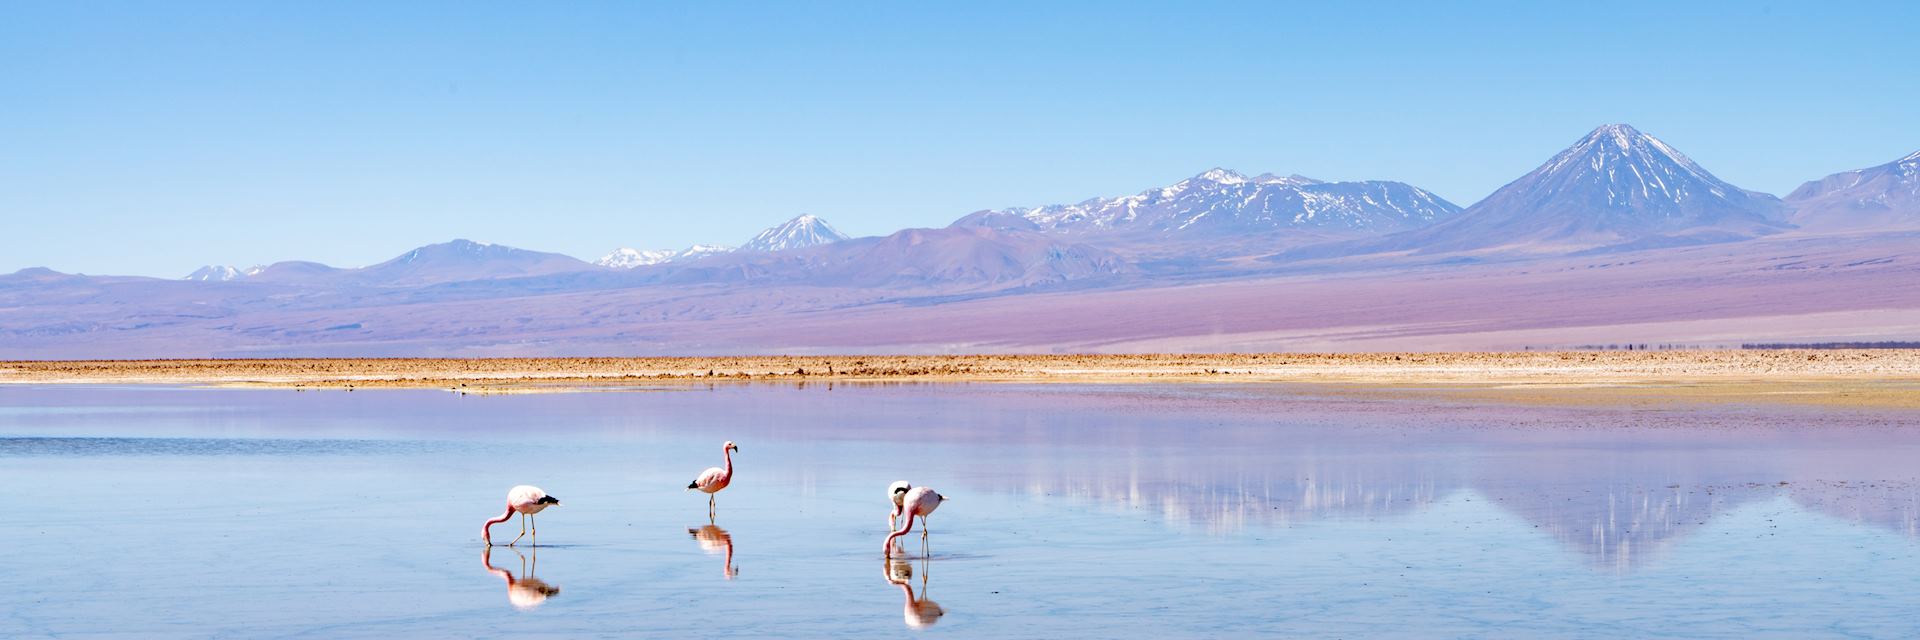 Flamingos in San Pedro de Atacama